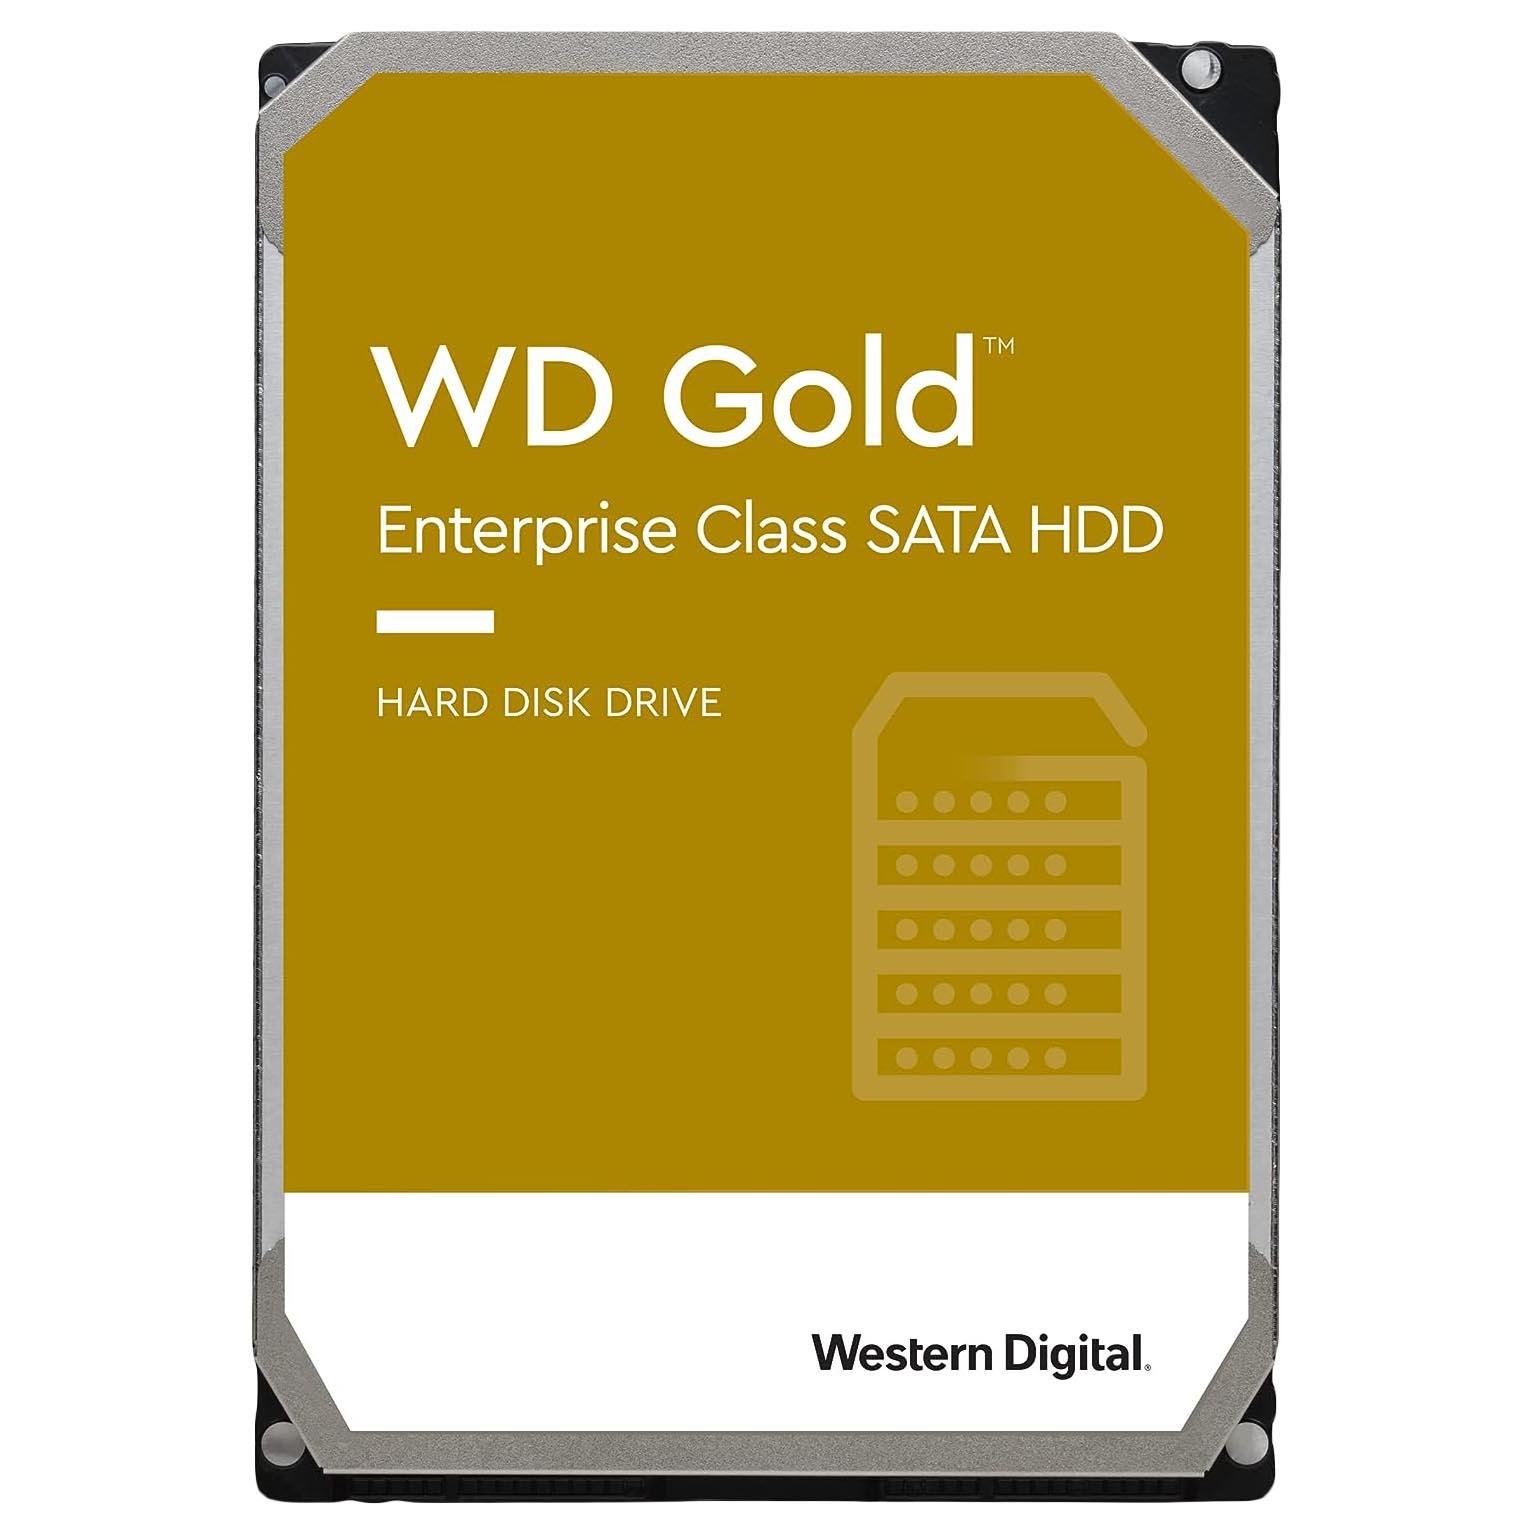 Внутренний жесткий диск Western Digital WD Gold Enterprise Class, WD8004VRYZ, 8Тб внутренний жесткий диск western digital gold 3 5 8 тб wd8004fryz